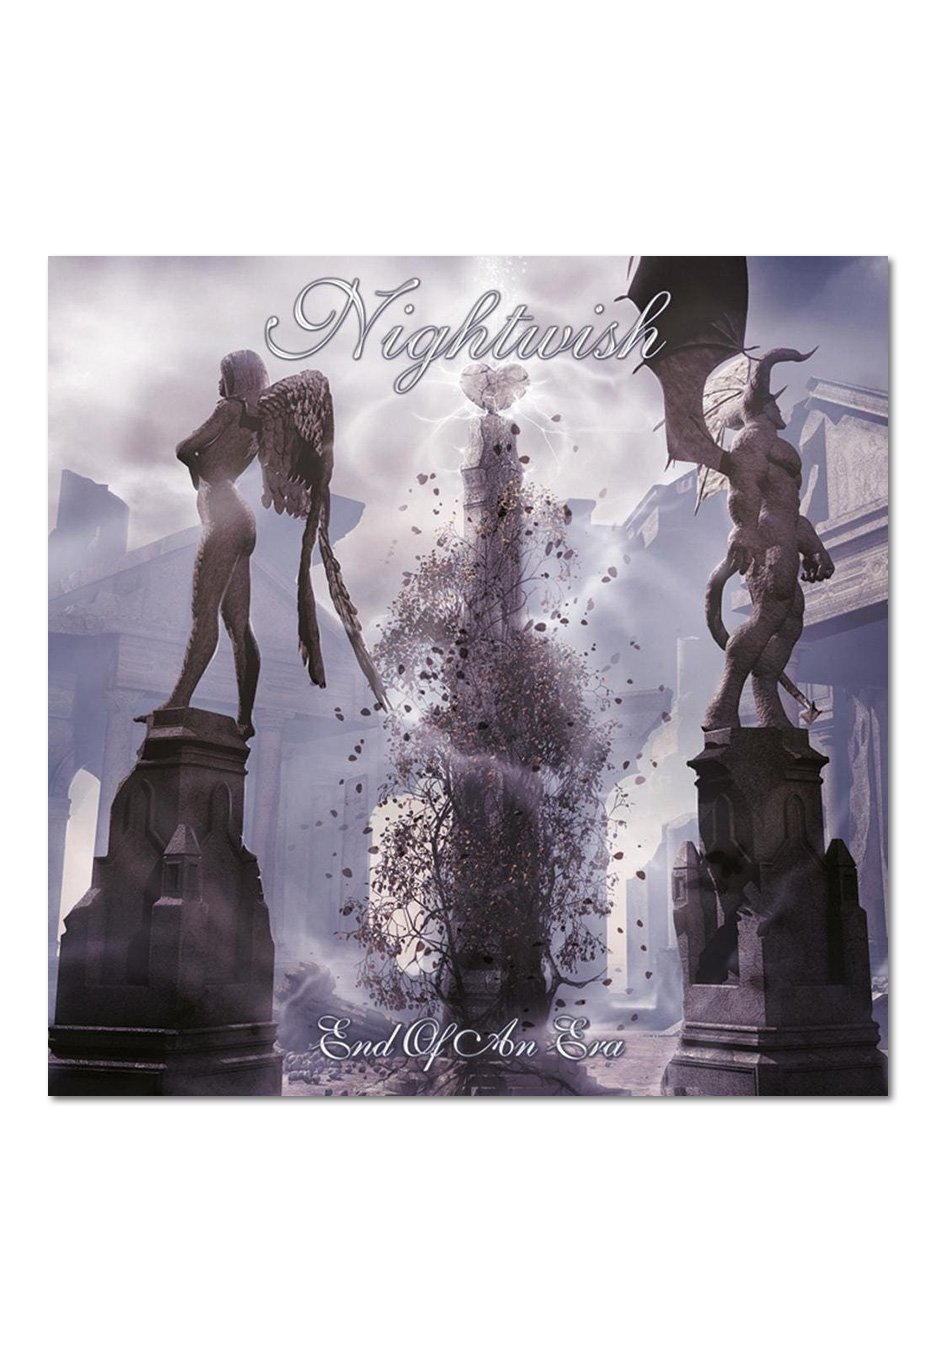 Nightwish - End Of An Era - 2 CD